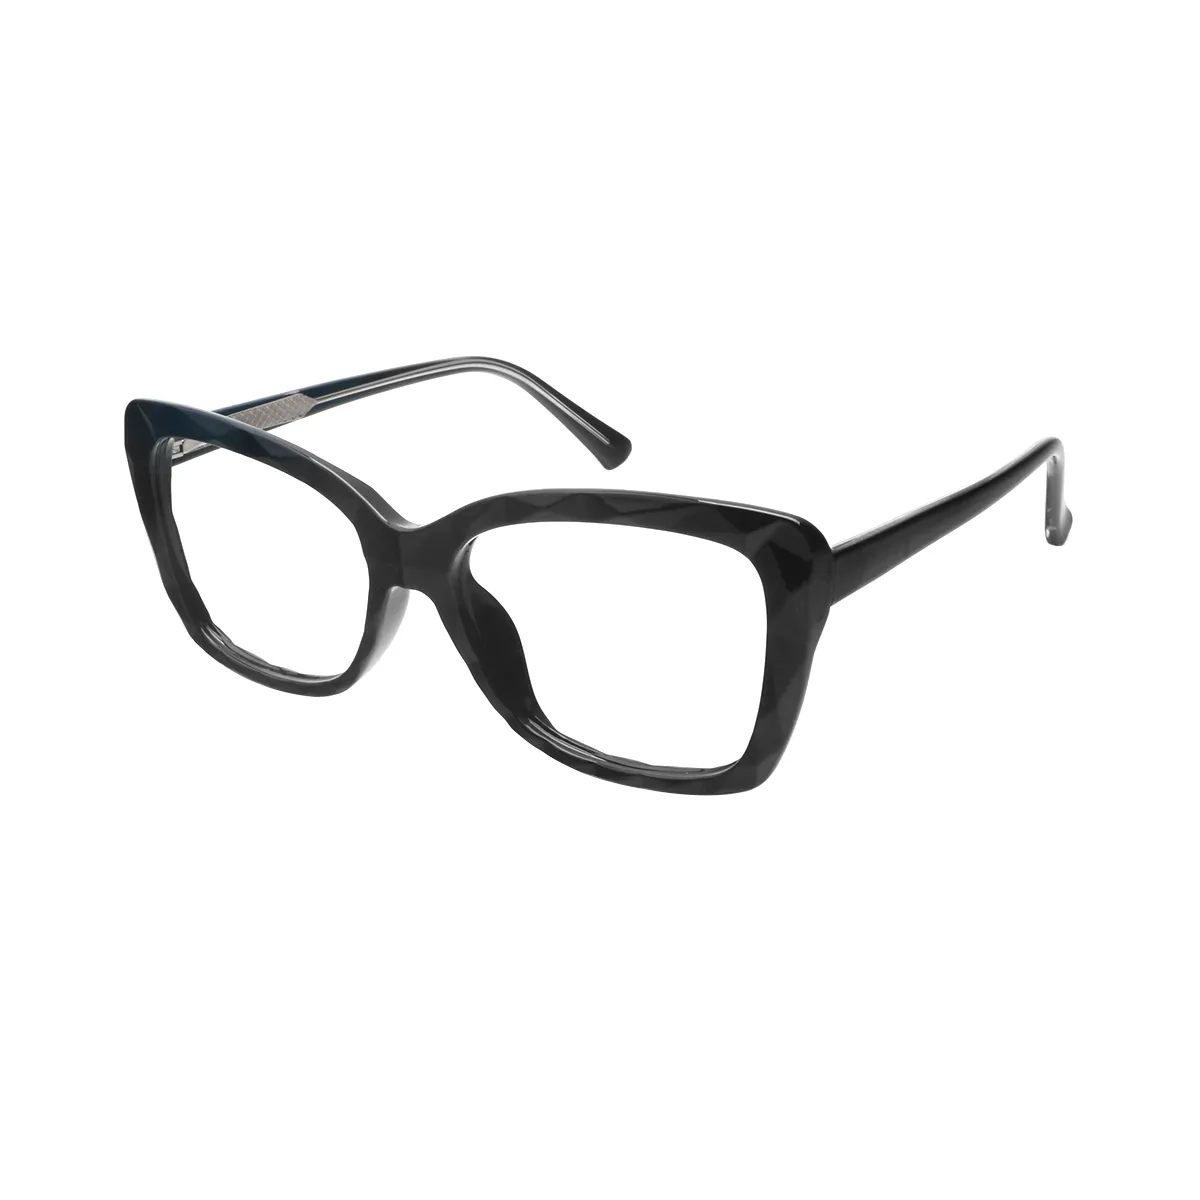 Hart - Square Black Glasses for Women